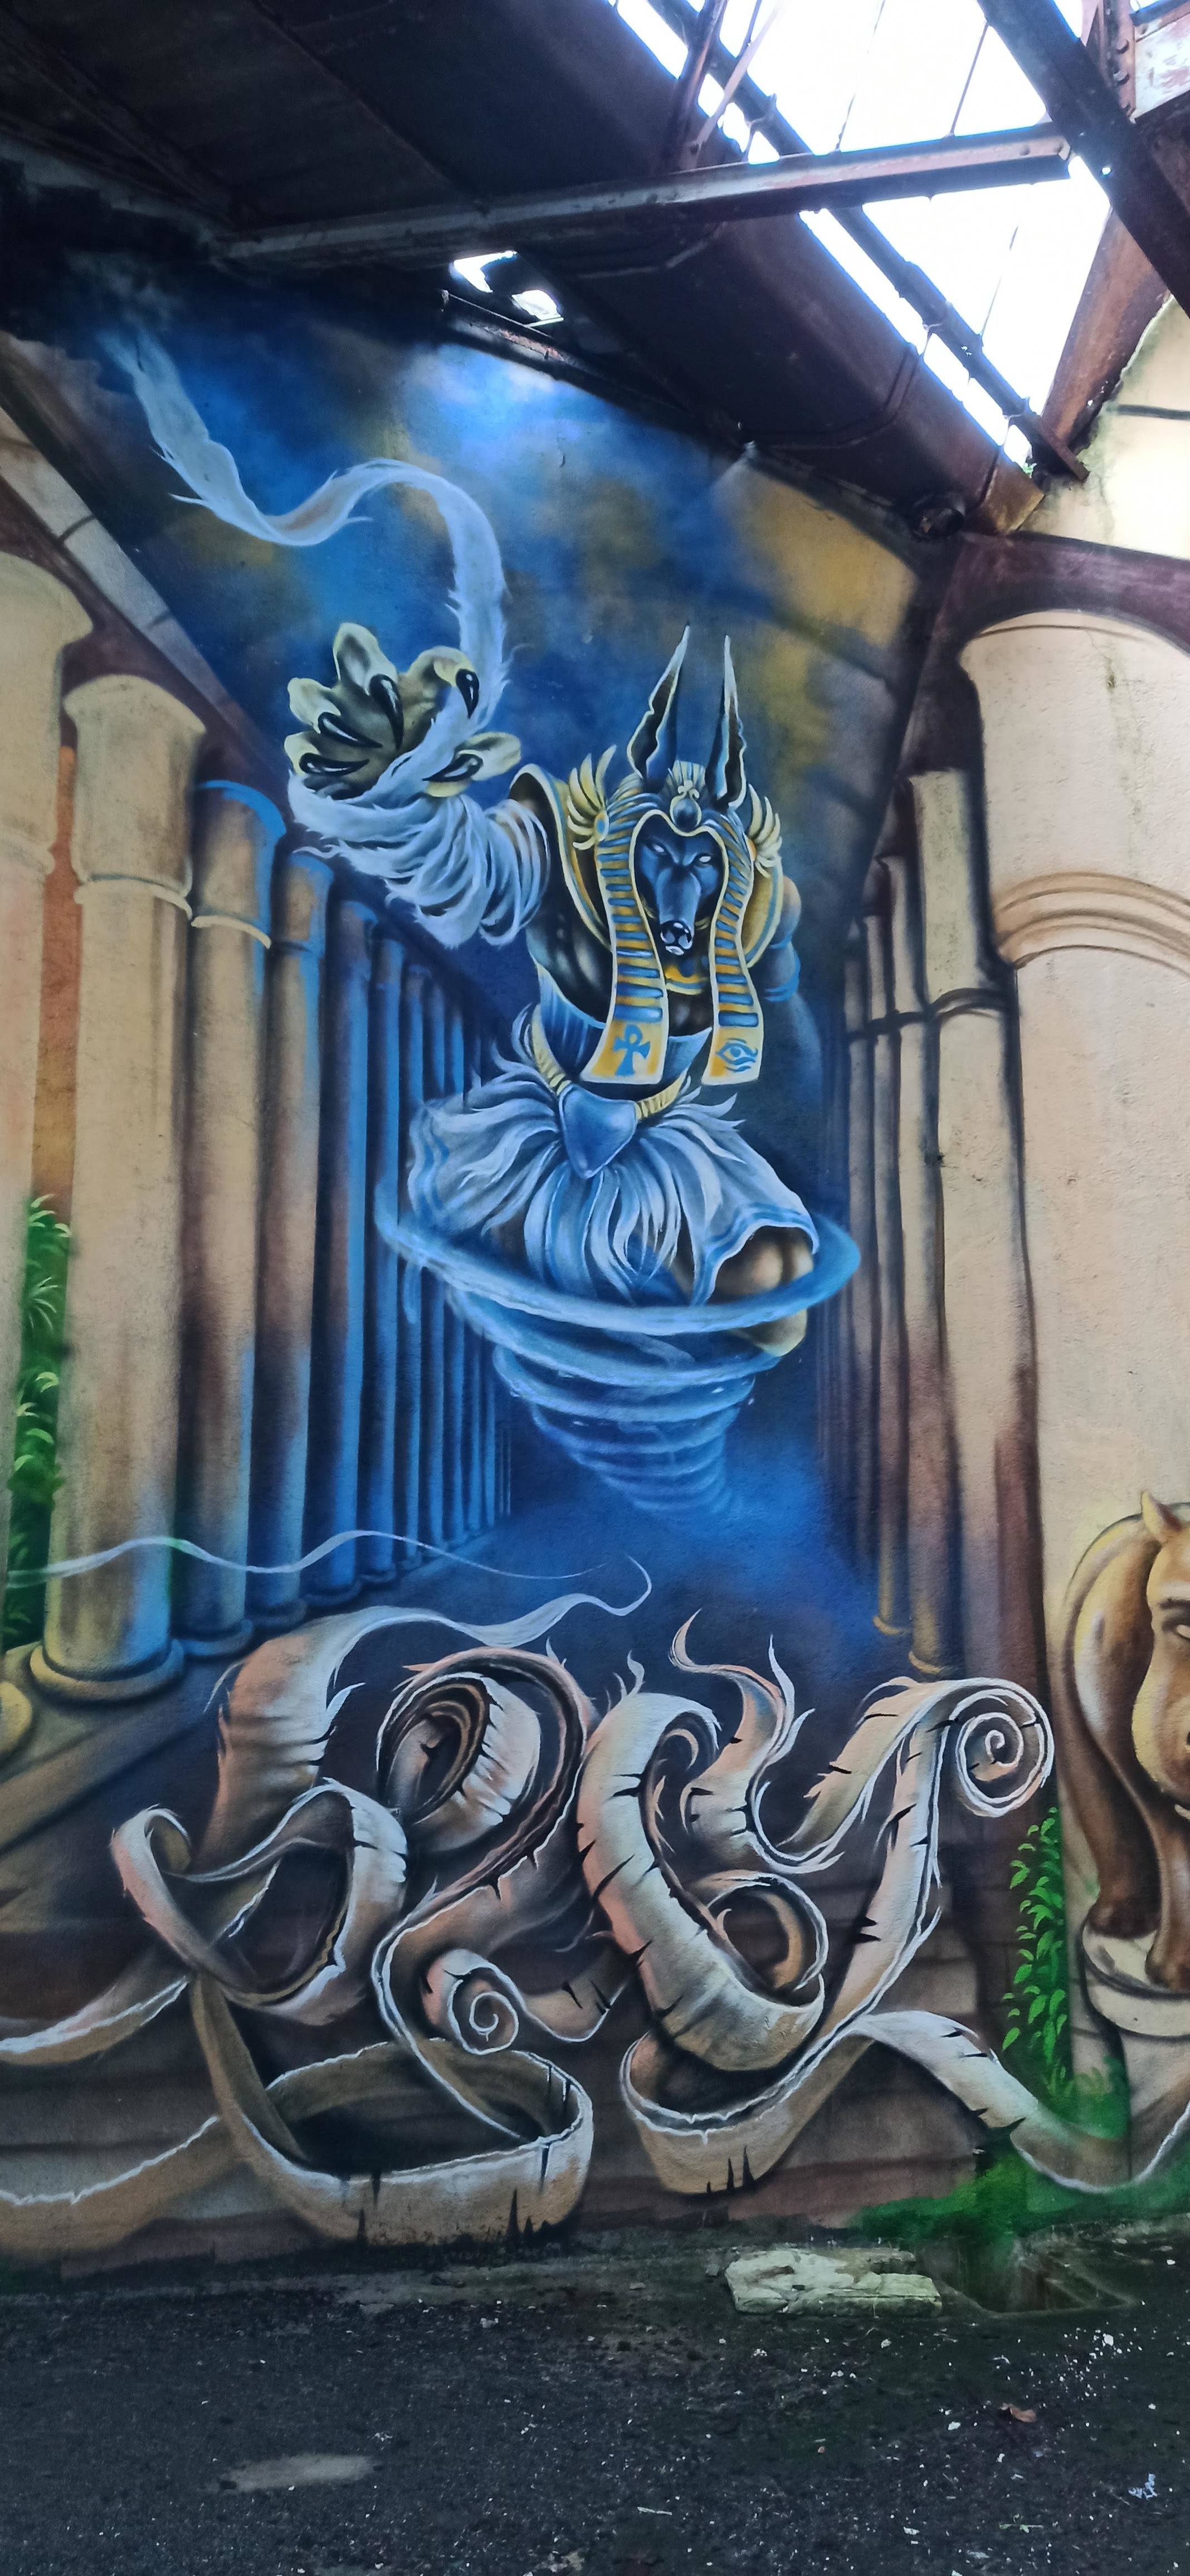 Graffiti 4890  capturé par Rabot à Lorient France